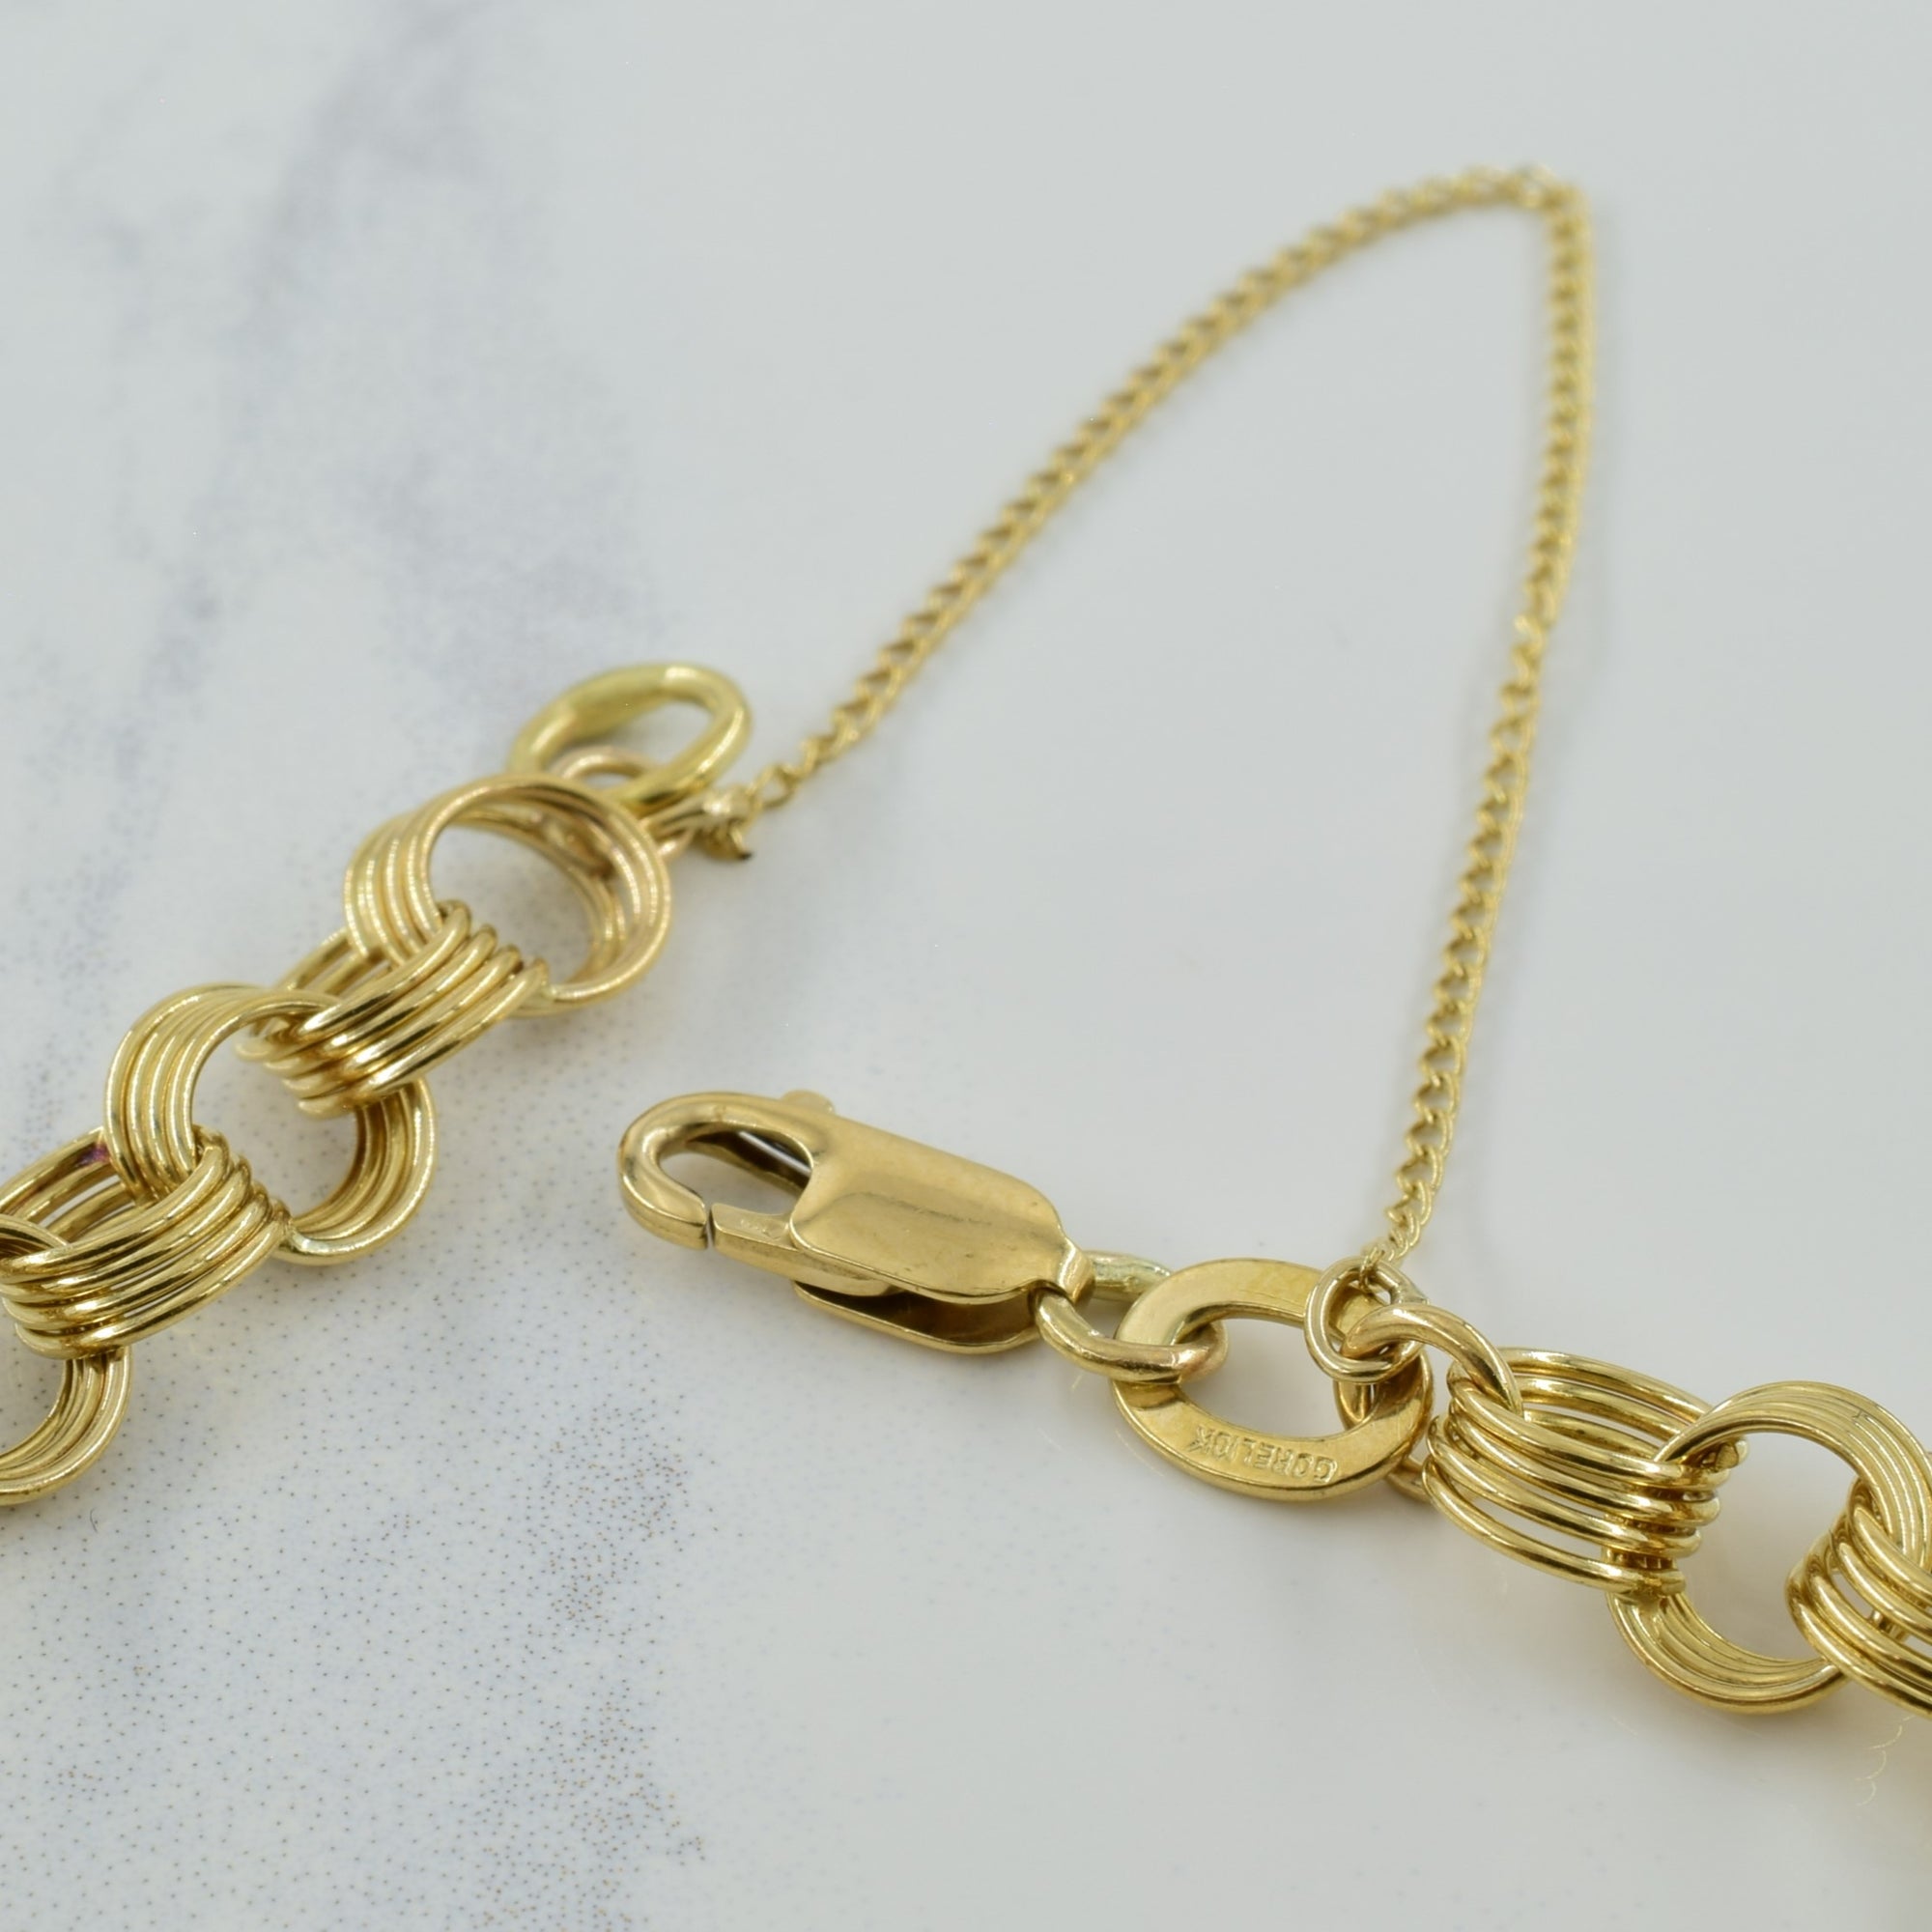 10k Yellow Gold Fancy Link Bracelet | 7.75